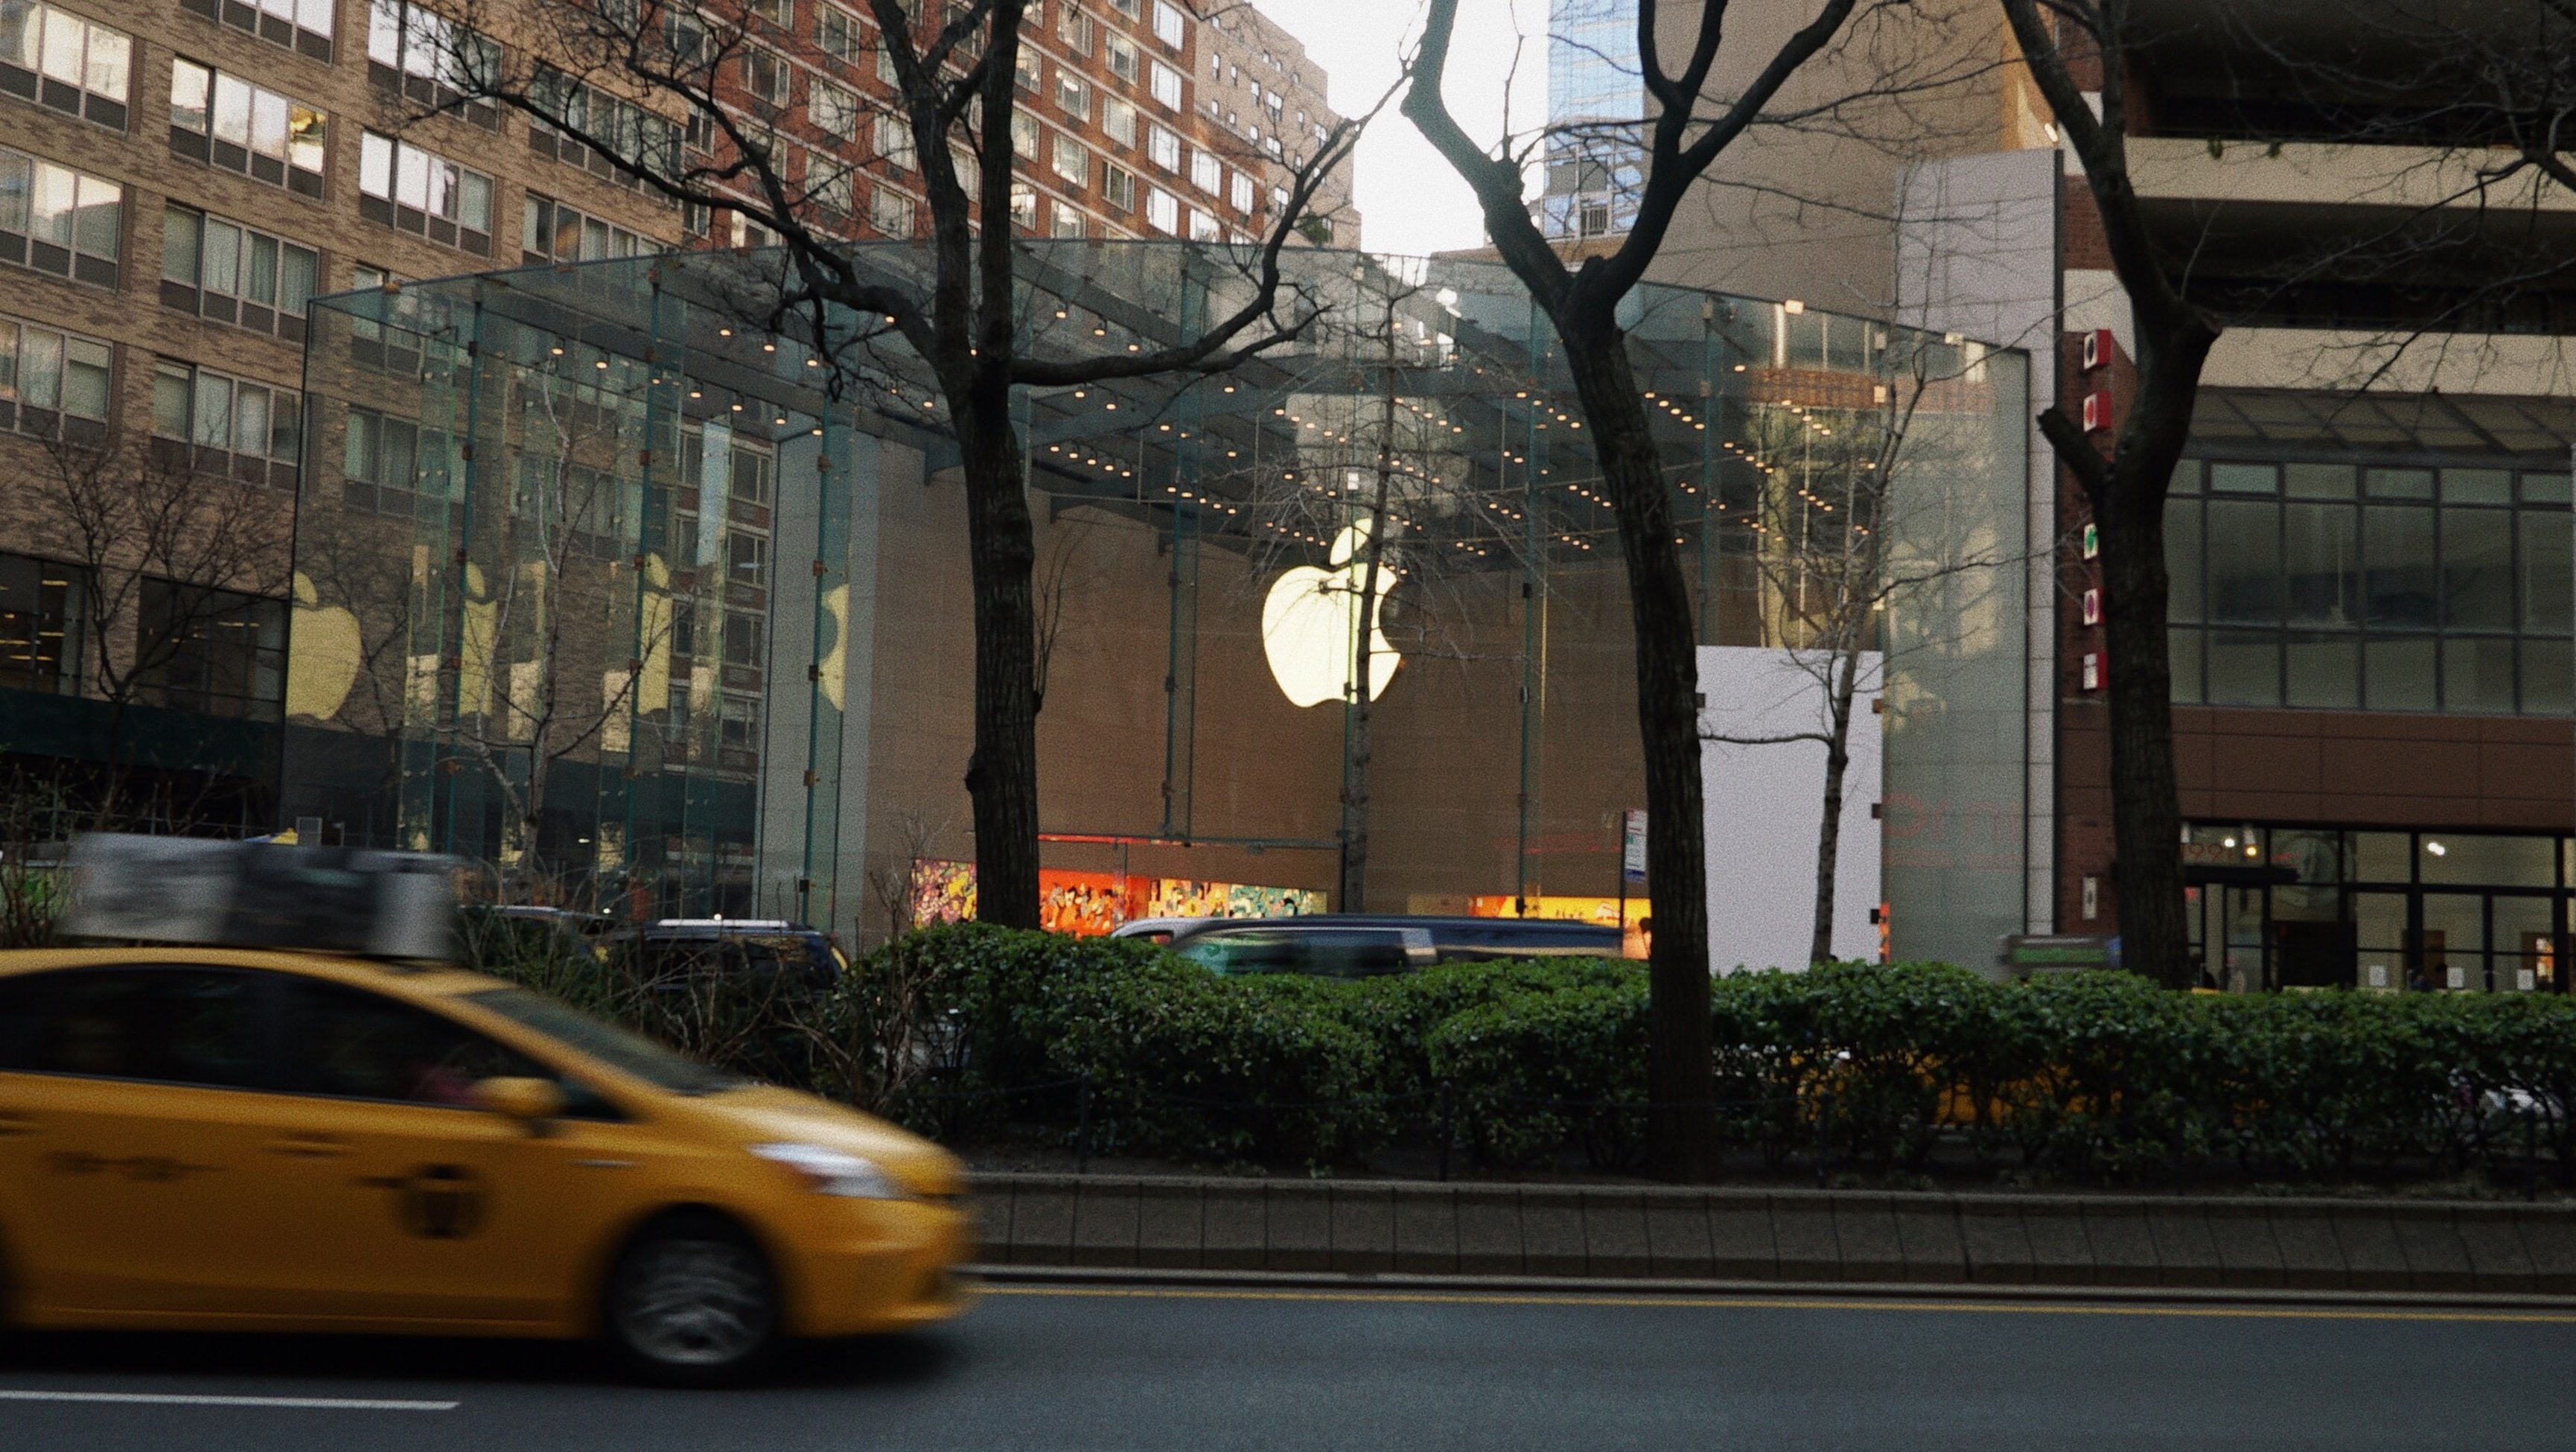 Apple временно закрыла все магазины за пределами Китая